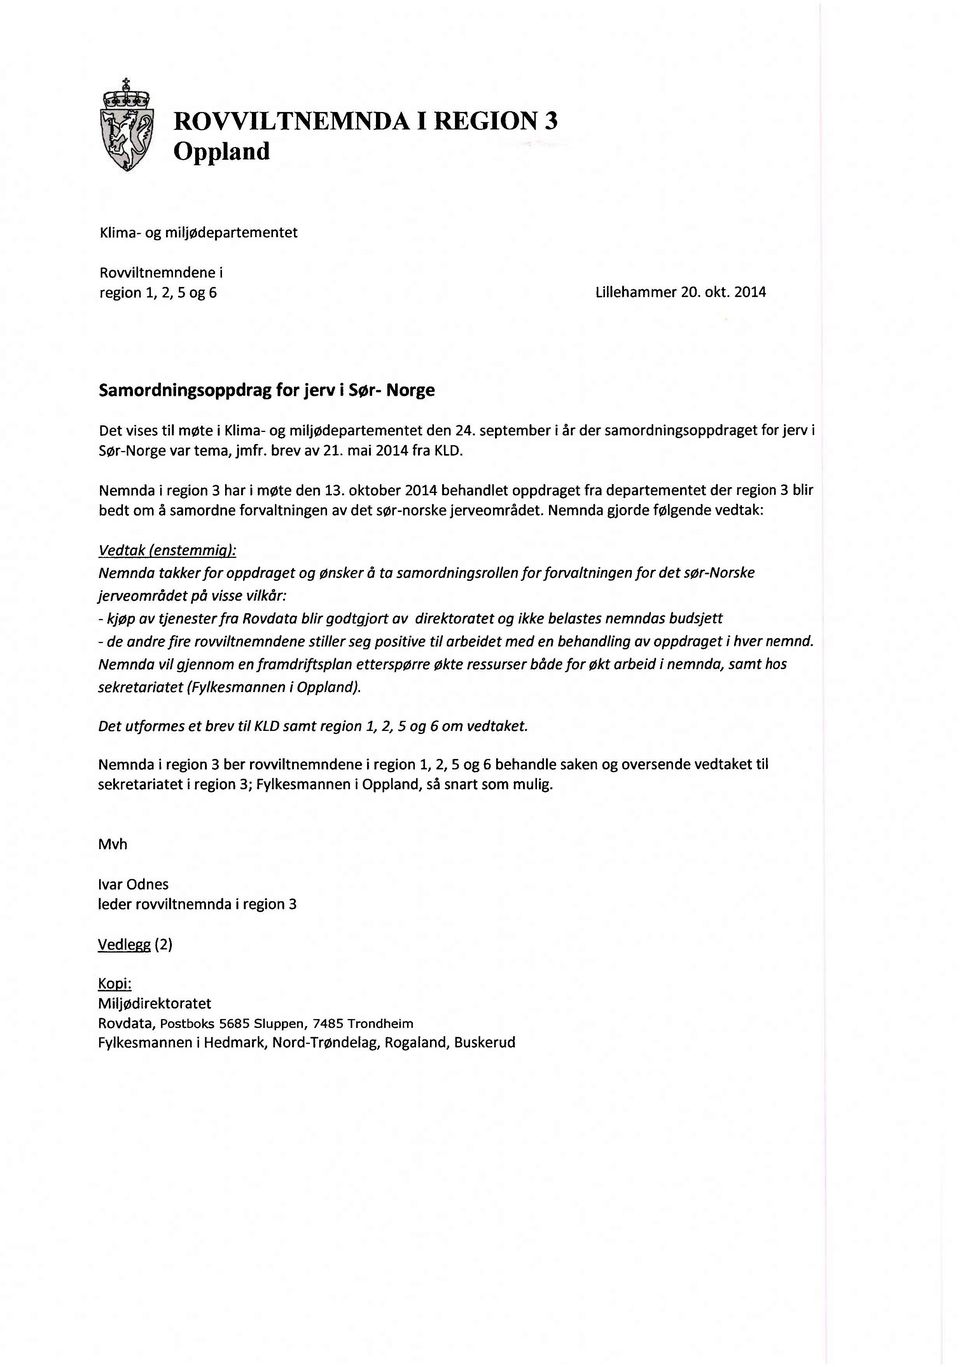 oktober 2014 behandlet oppdraget fra departementet der region 3 blir bedt om å samordne forvaltningen av det sør-norske jerveområdet.